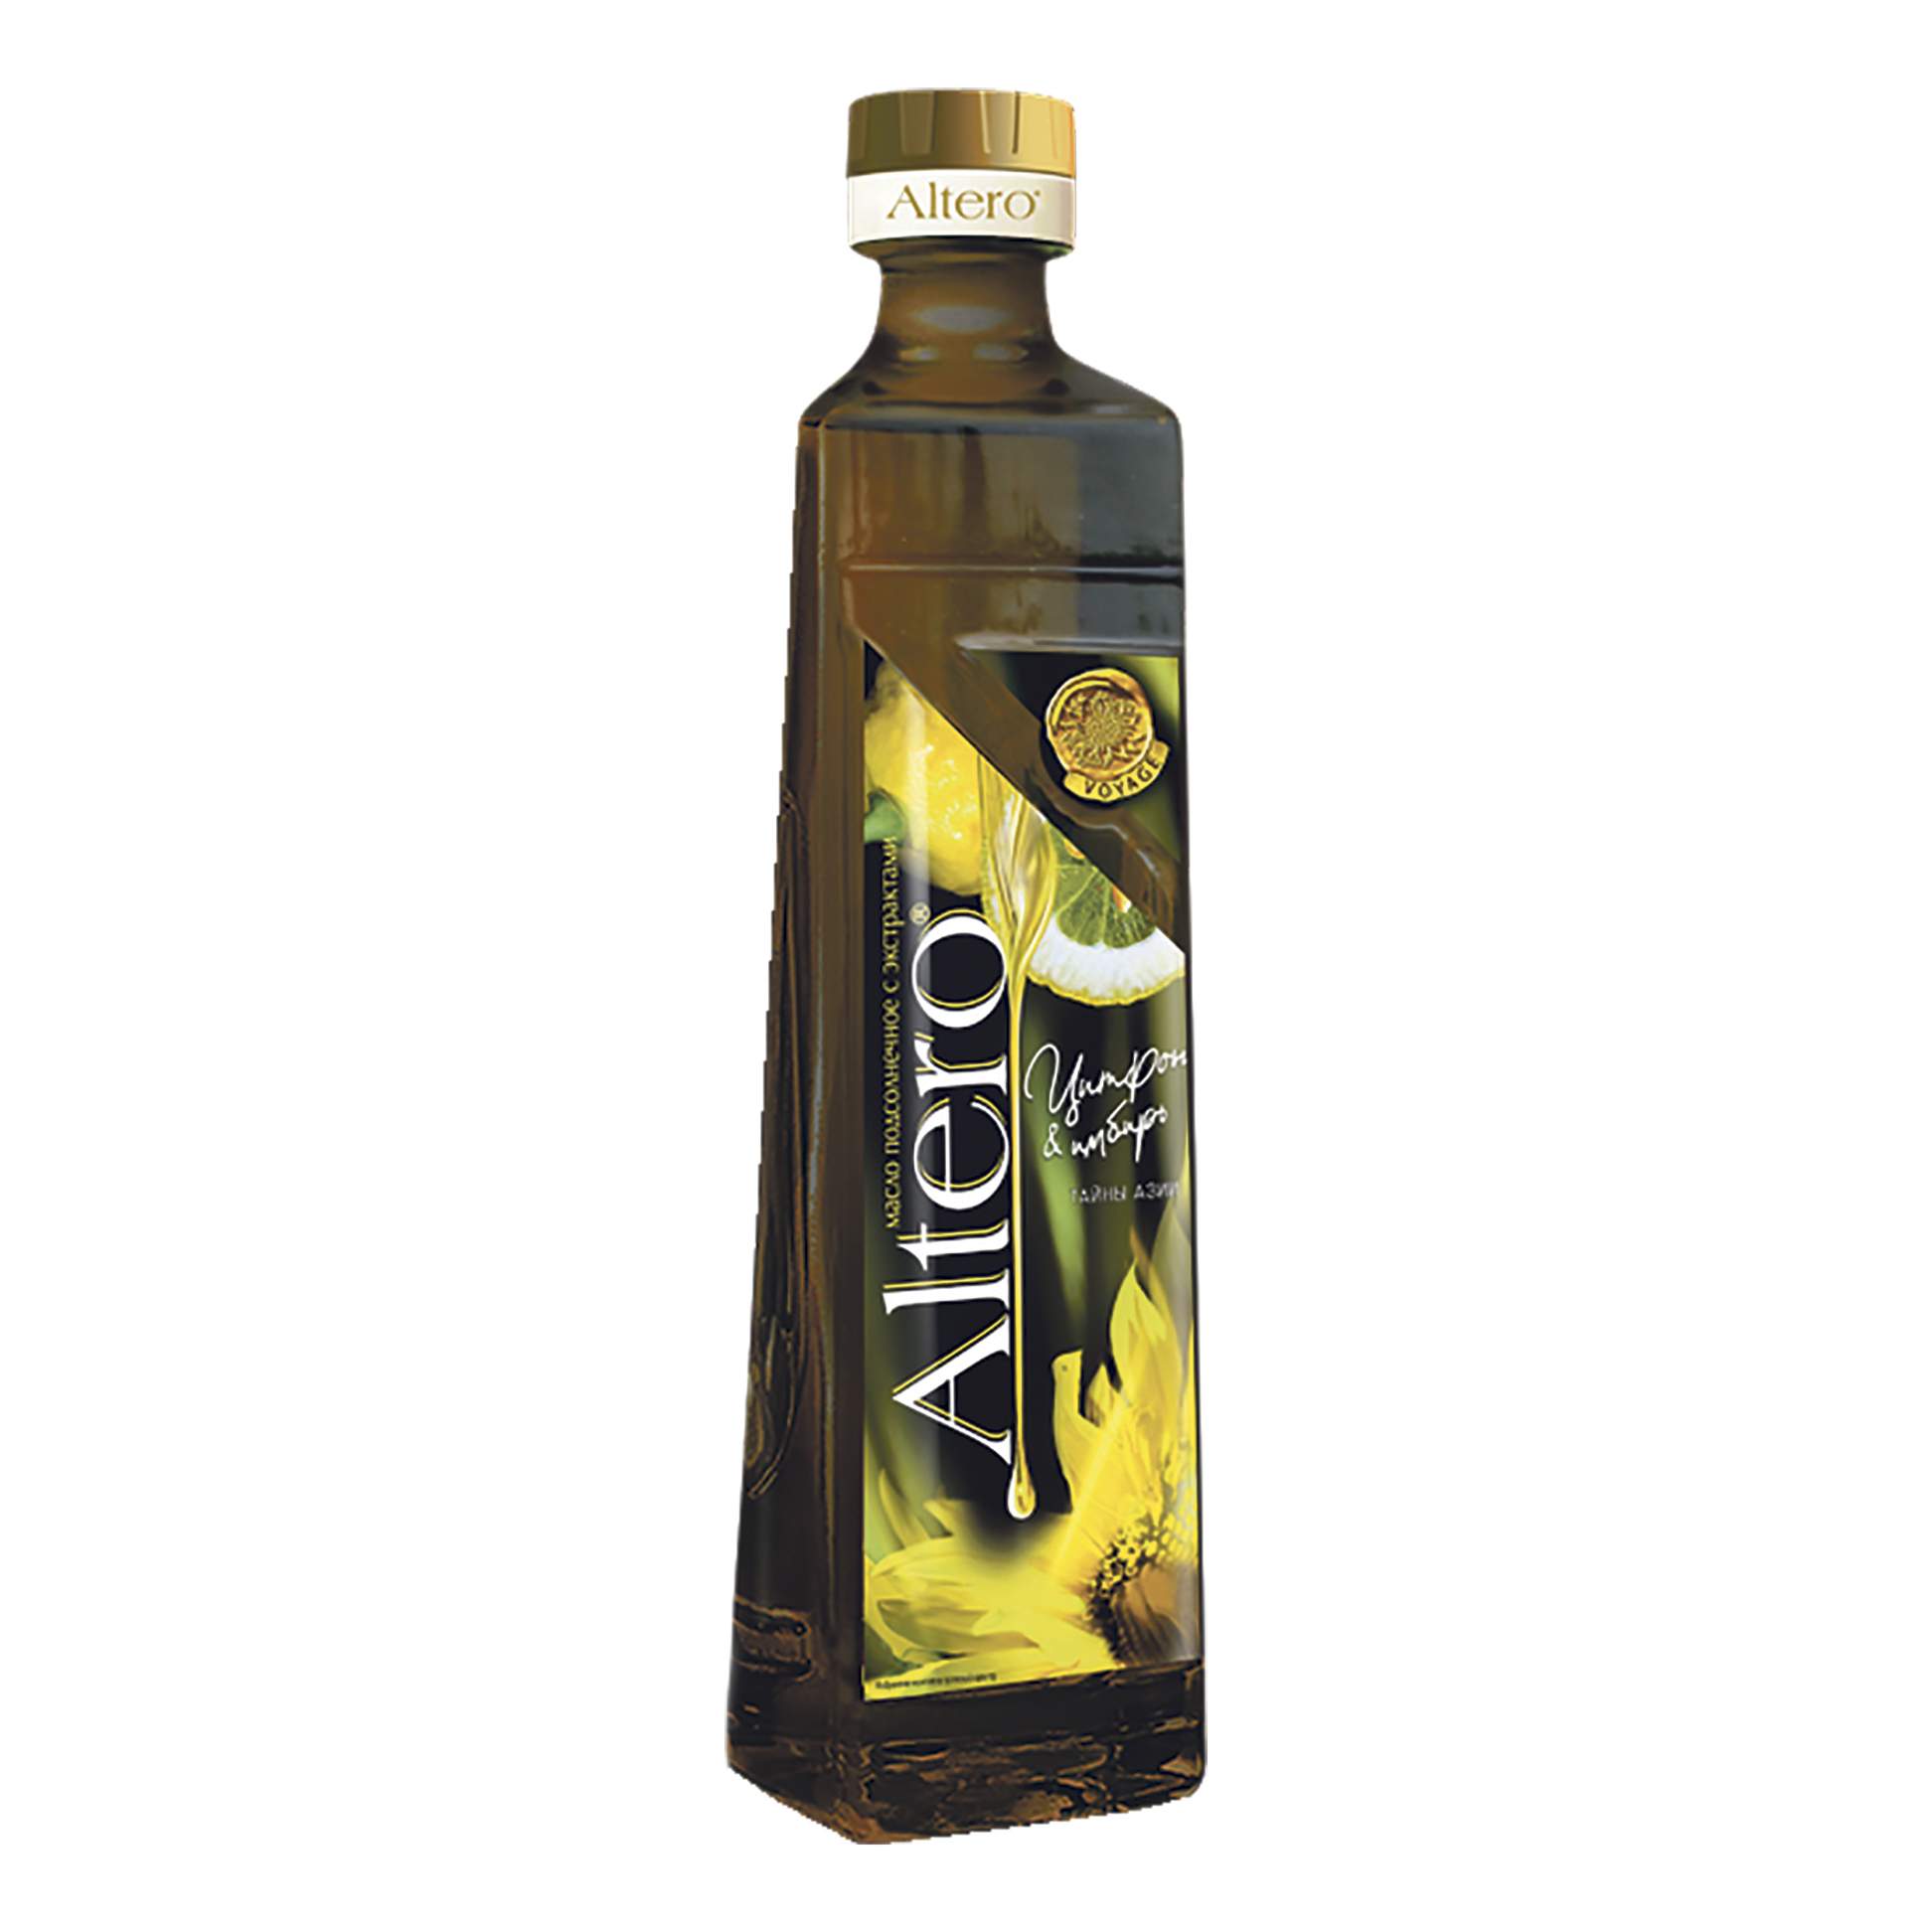 Подсолнечное масло Altero с экстрактом цитрона и имбиря 0,5 л